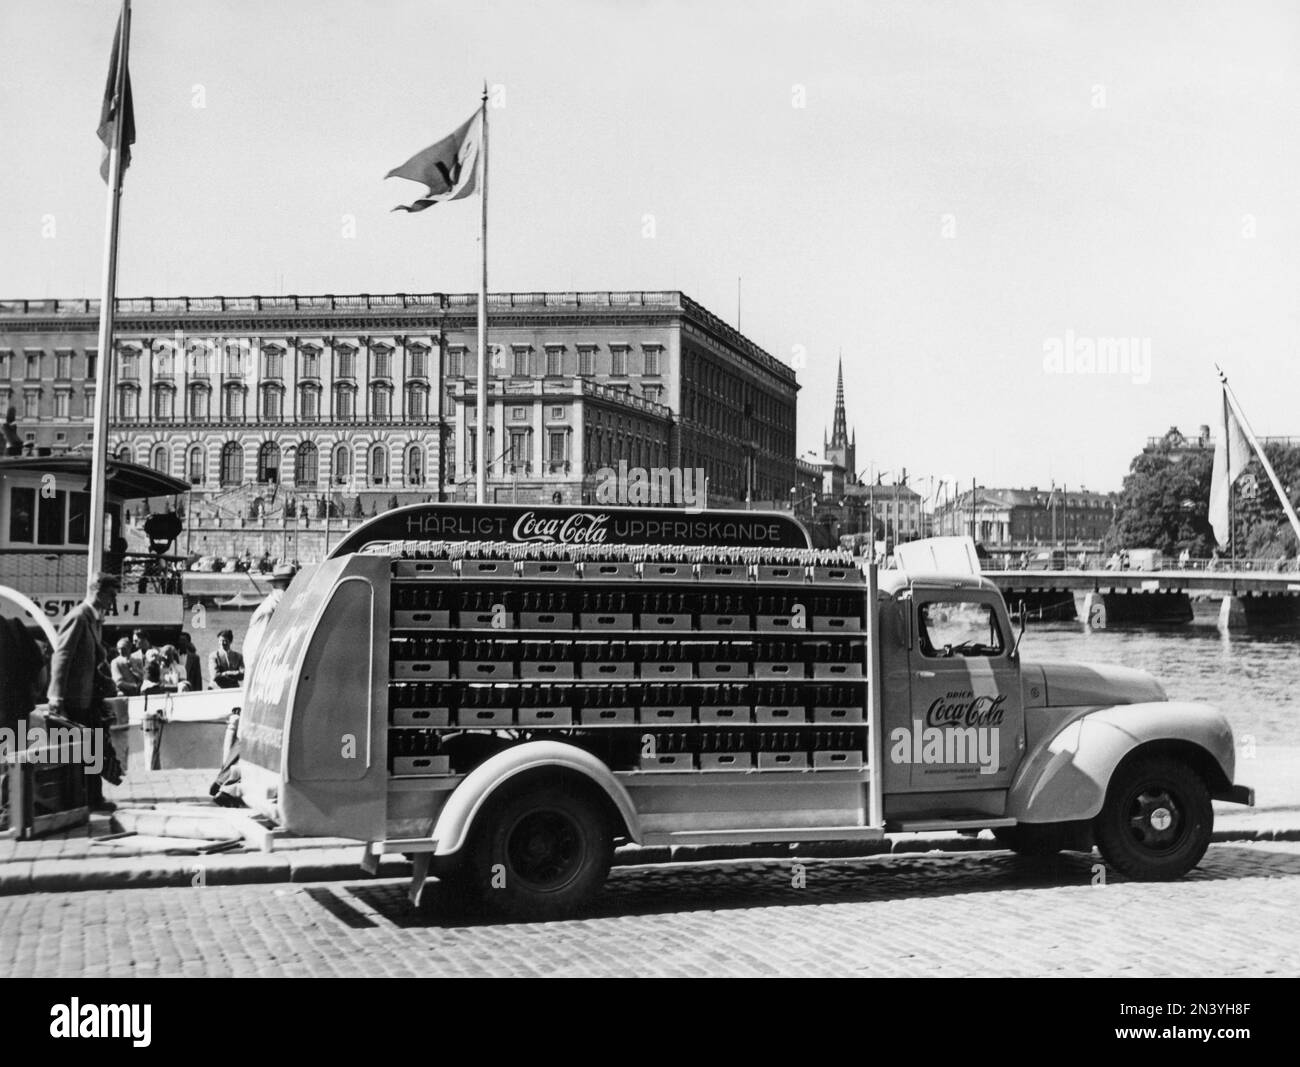 Coca-Cola en 1950s. En 1 janvier 1953, Coca-Cola a été autorisé pour la première fois à être fabriqué et vendu en Suède, avant d'être limité à la vente en Suède puisque le contenu de Coca-Cola comprenait des substances interdites comme l'acide phosphorique et la caféine. Un des premiers camions de distribution de la brasserie Mineralvattenfabriken Tre Kronor chargé de bouteilles Coca-Cola photographiés à Stockholm avec le château royal en arrière-plan. Volvo Trucks modèle L34 modifié et peint en rouge pour l'utilisation exclusive sur les camions Coca-Cola. Coca-Cola a été tôt avec avoir la publicité sur leurs véhicules. Suède 195 Banque D'Images